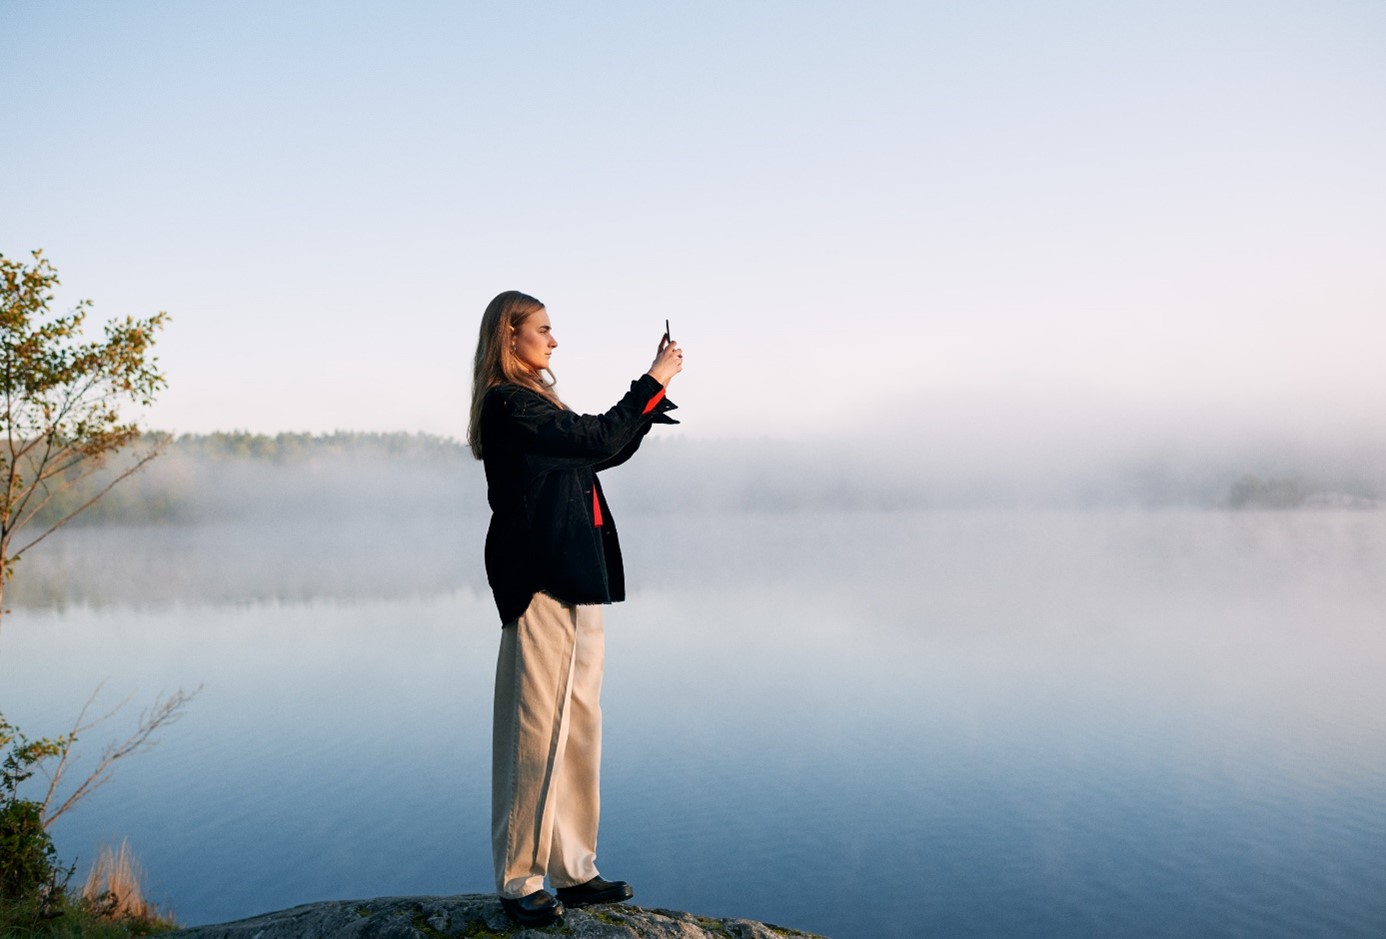 En person som står på en klippa och fotograferar med en smartphone.